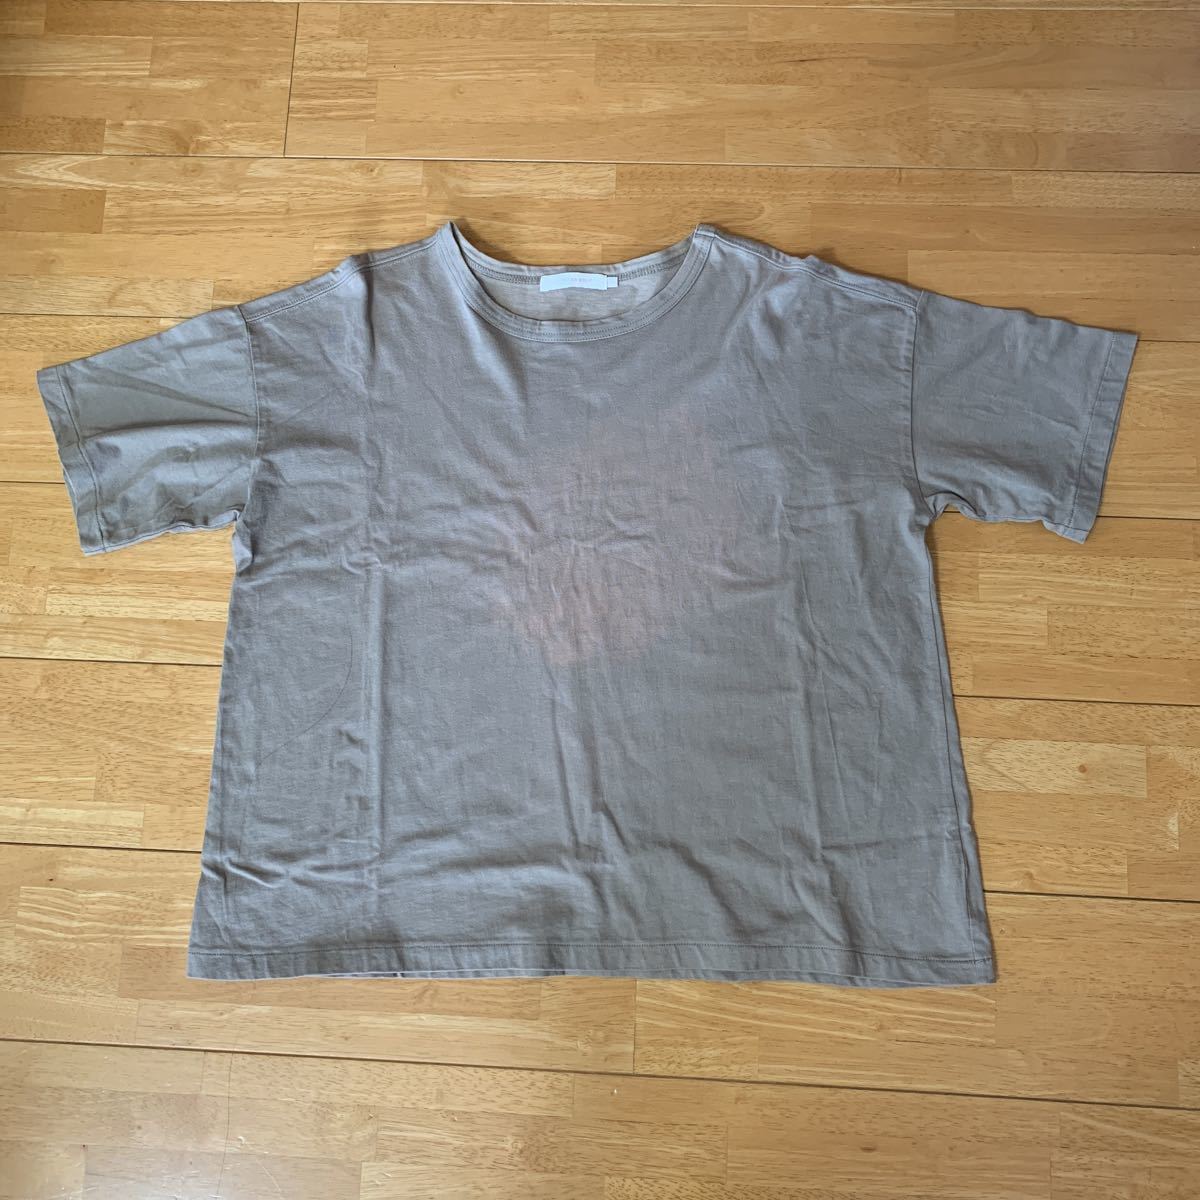 AMERICAN HOLIC アメリカンホリック レディース Tシャツ 綿100% 濃いグレー サイズL 色あせ 中古品 送料無料_画像1